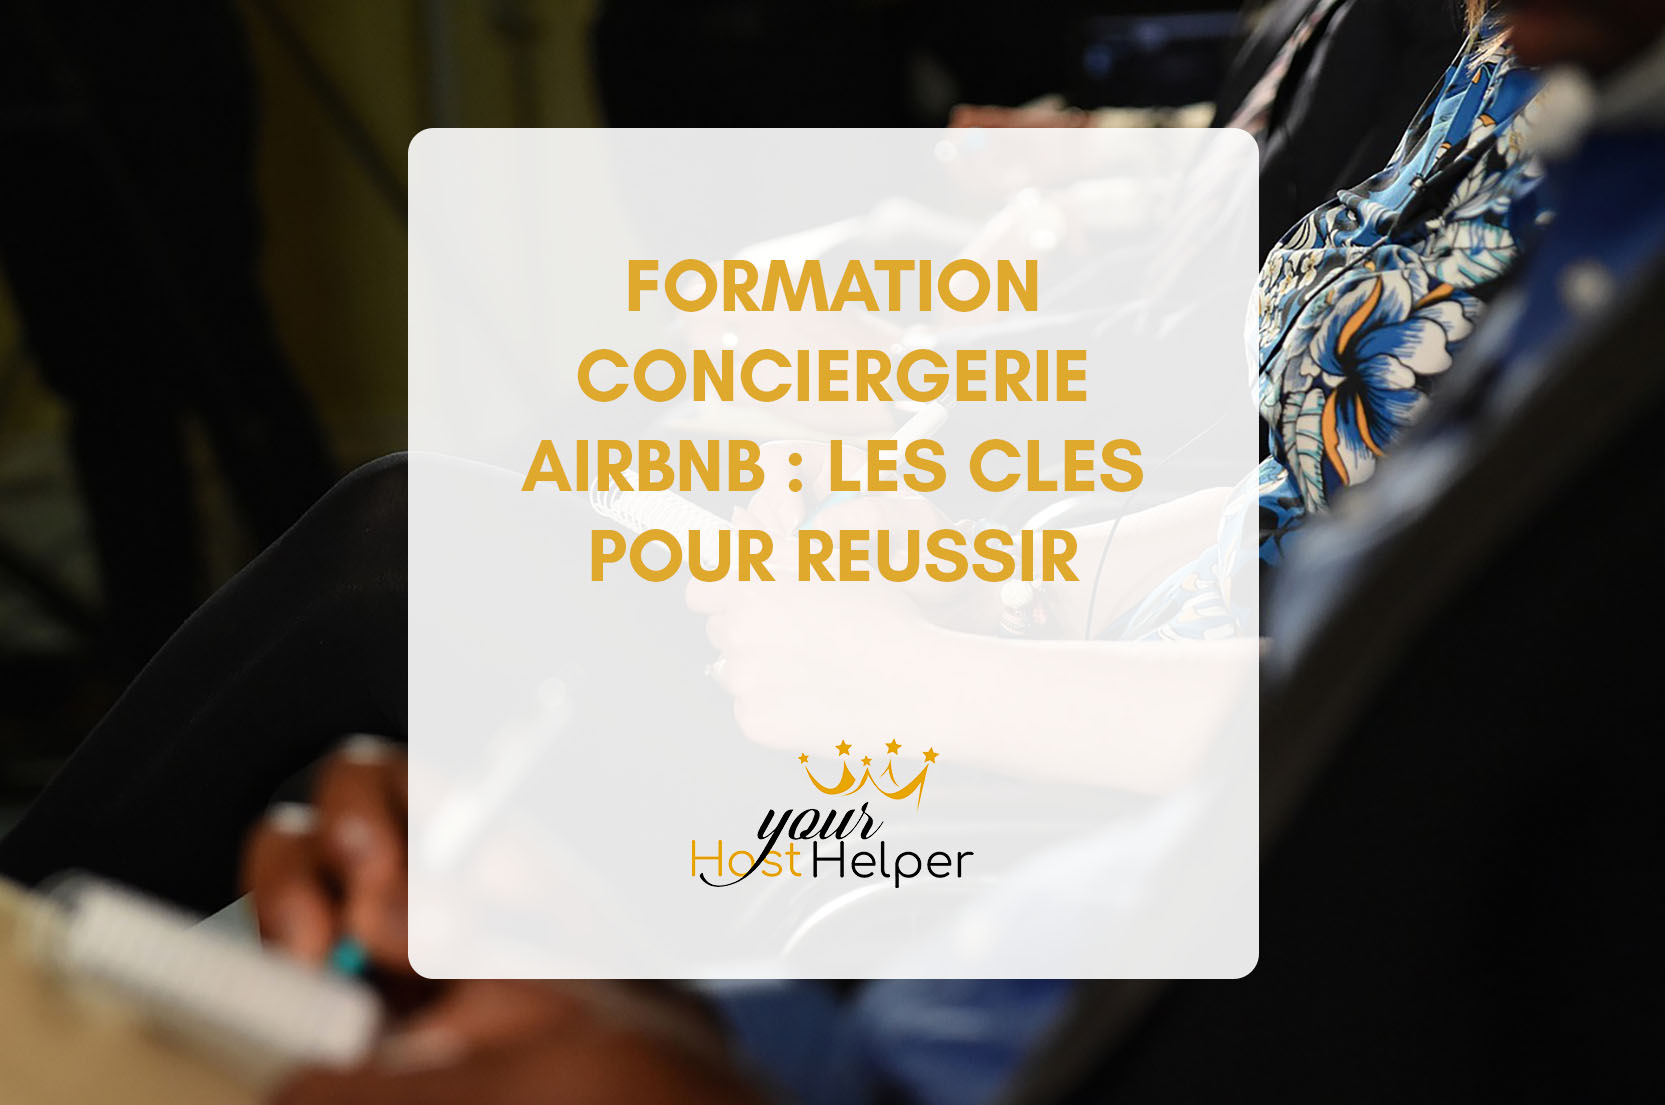 Leggi di più sull'articolo Formazione per concierge Airbnb: le chiavi del successo con il tuo servizio concierge a Cannes